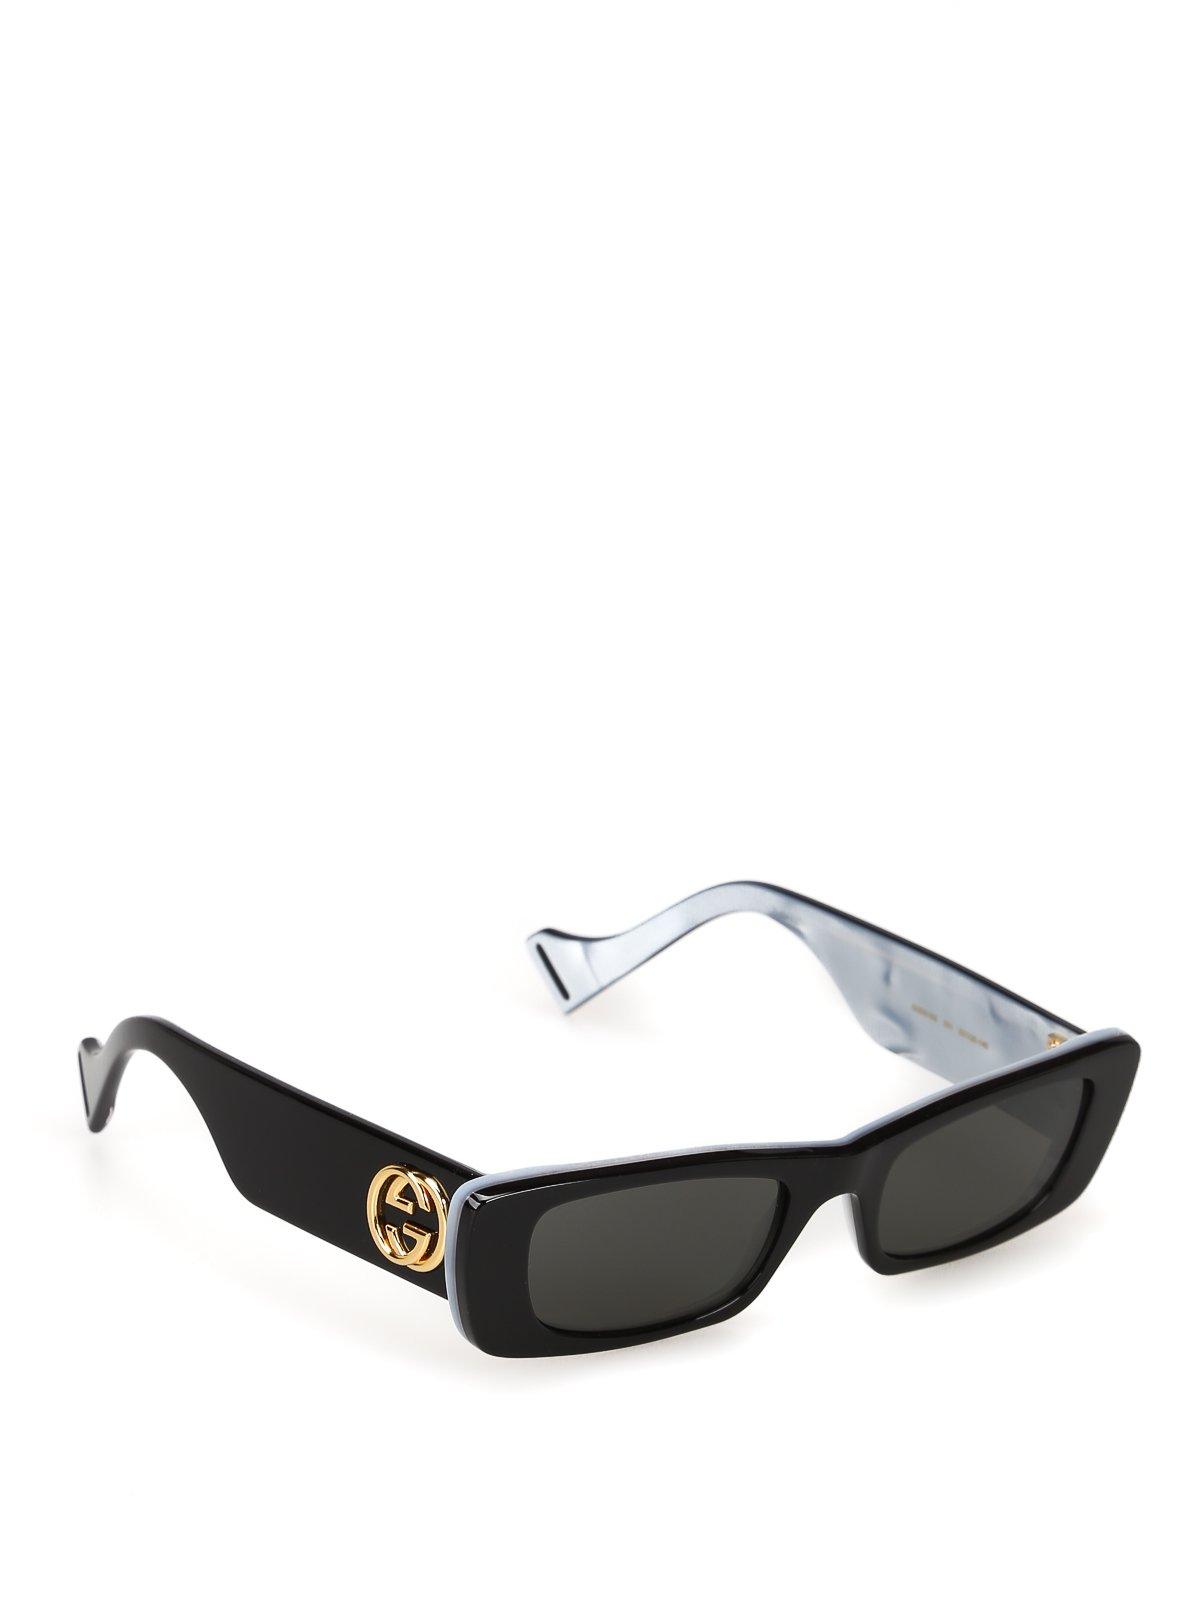 gucci rectangle sunglasses